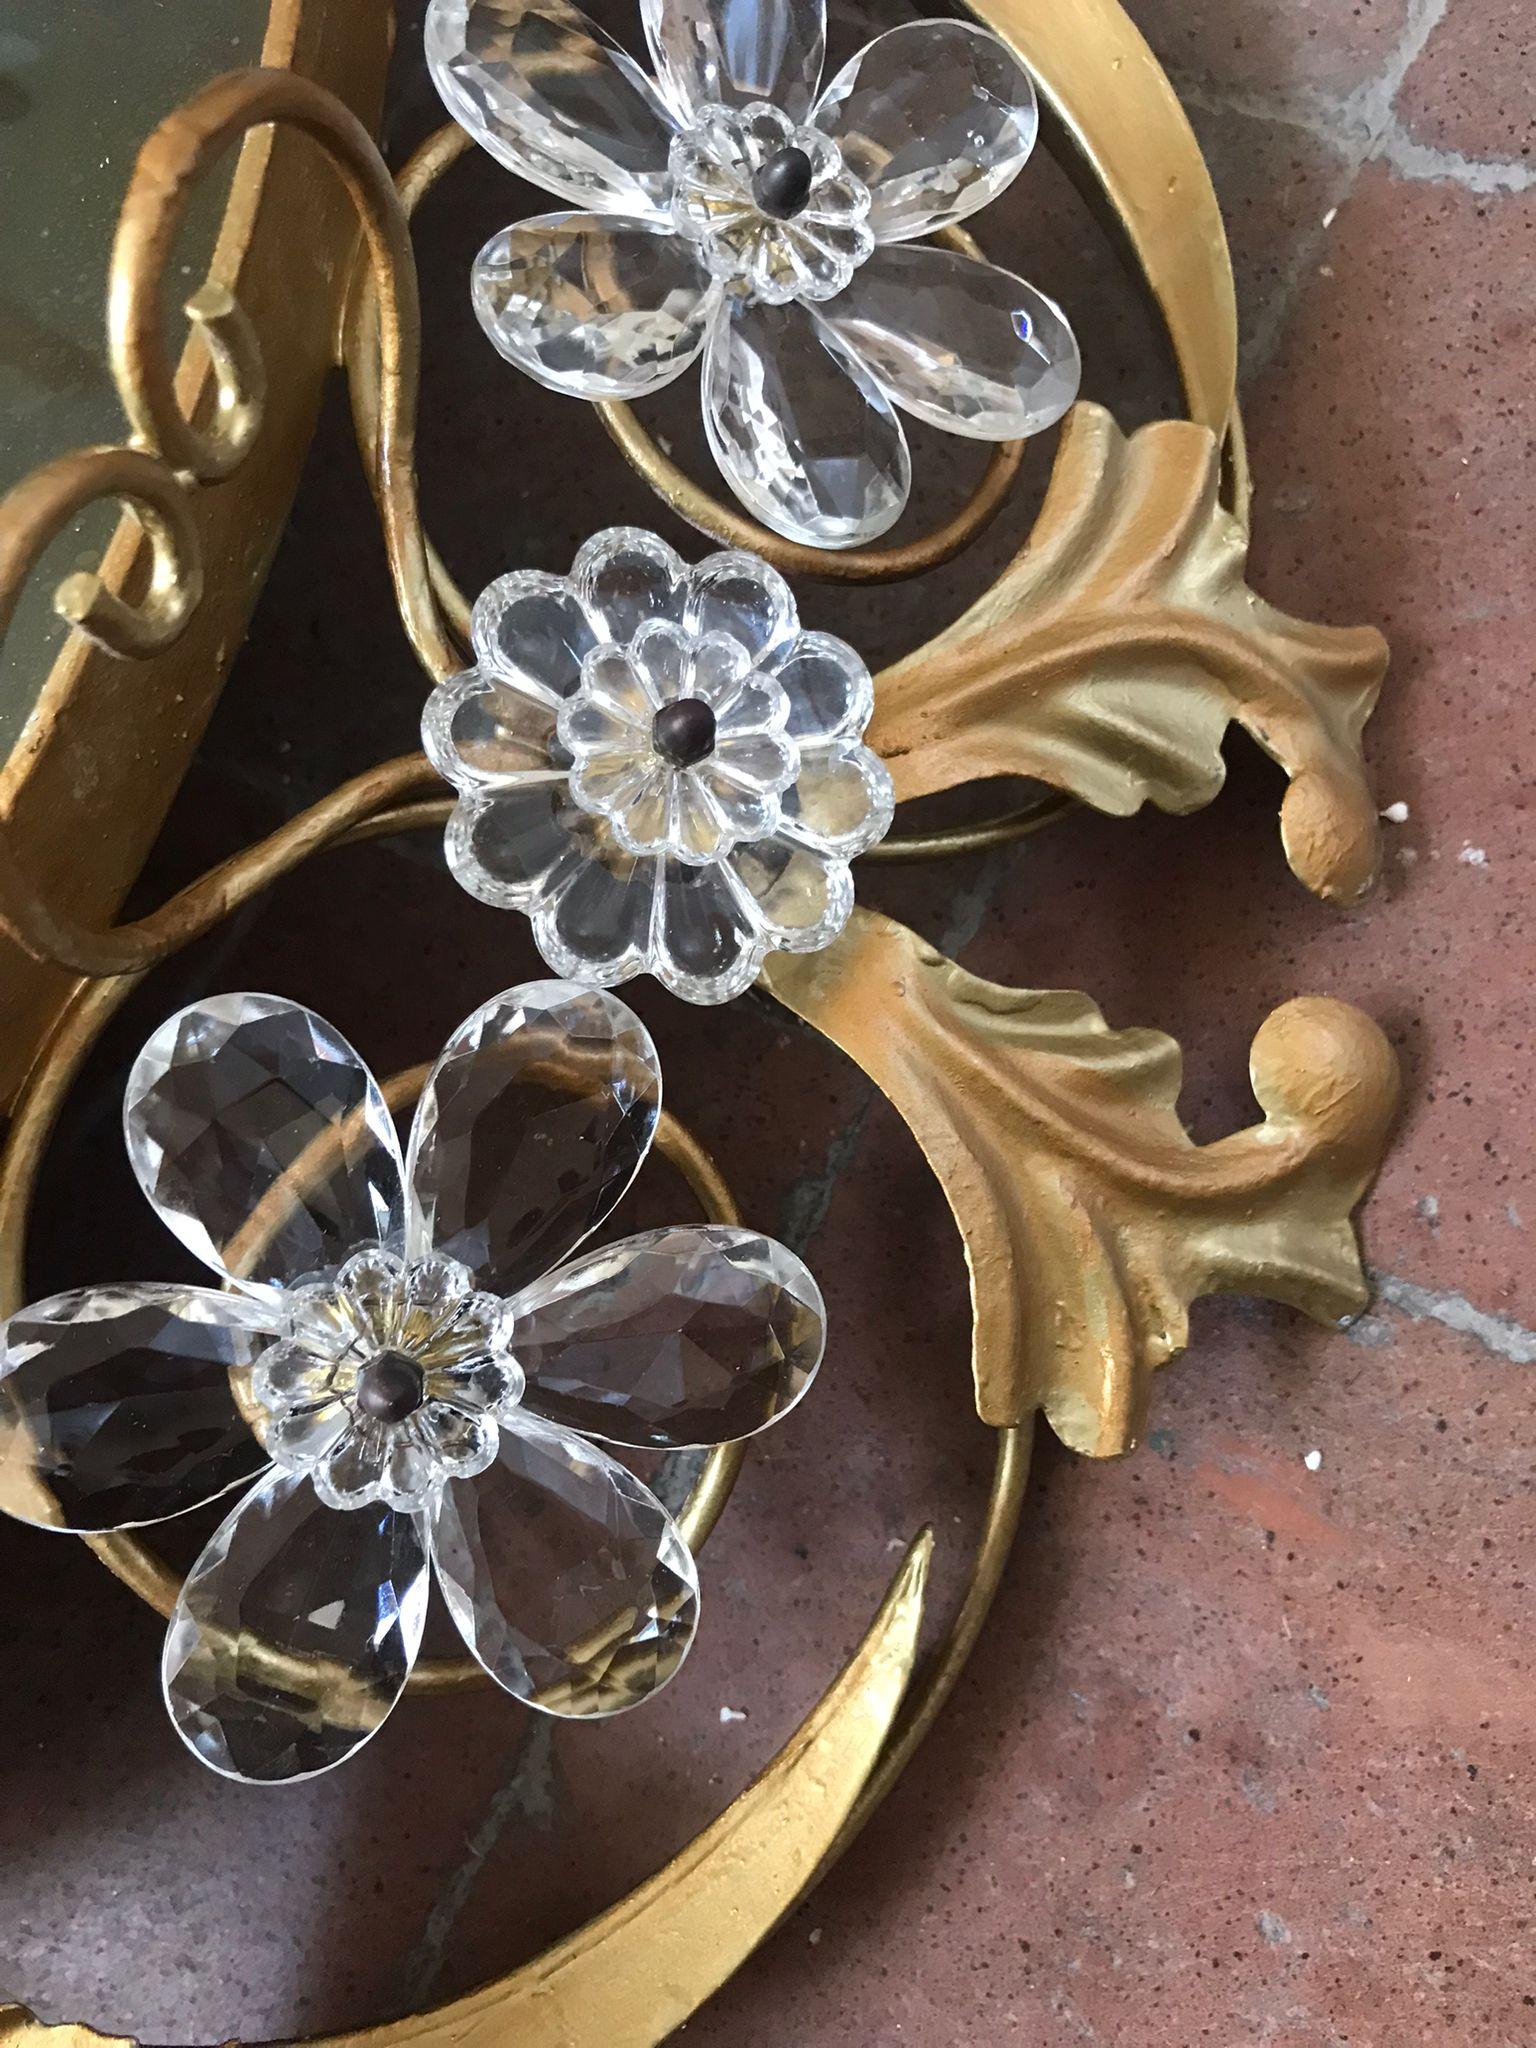 1940er Jahre Französisch handgefertigte vergoldetem Metall Kronleuchter Kristall Gebote und Blumen, kann entweder bündig montiert oder mit Kette aufgehängt werden. in ausgezeichnetem Vintage-Zustand

* Die Abmessungen sind ohne Kette.